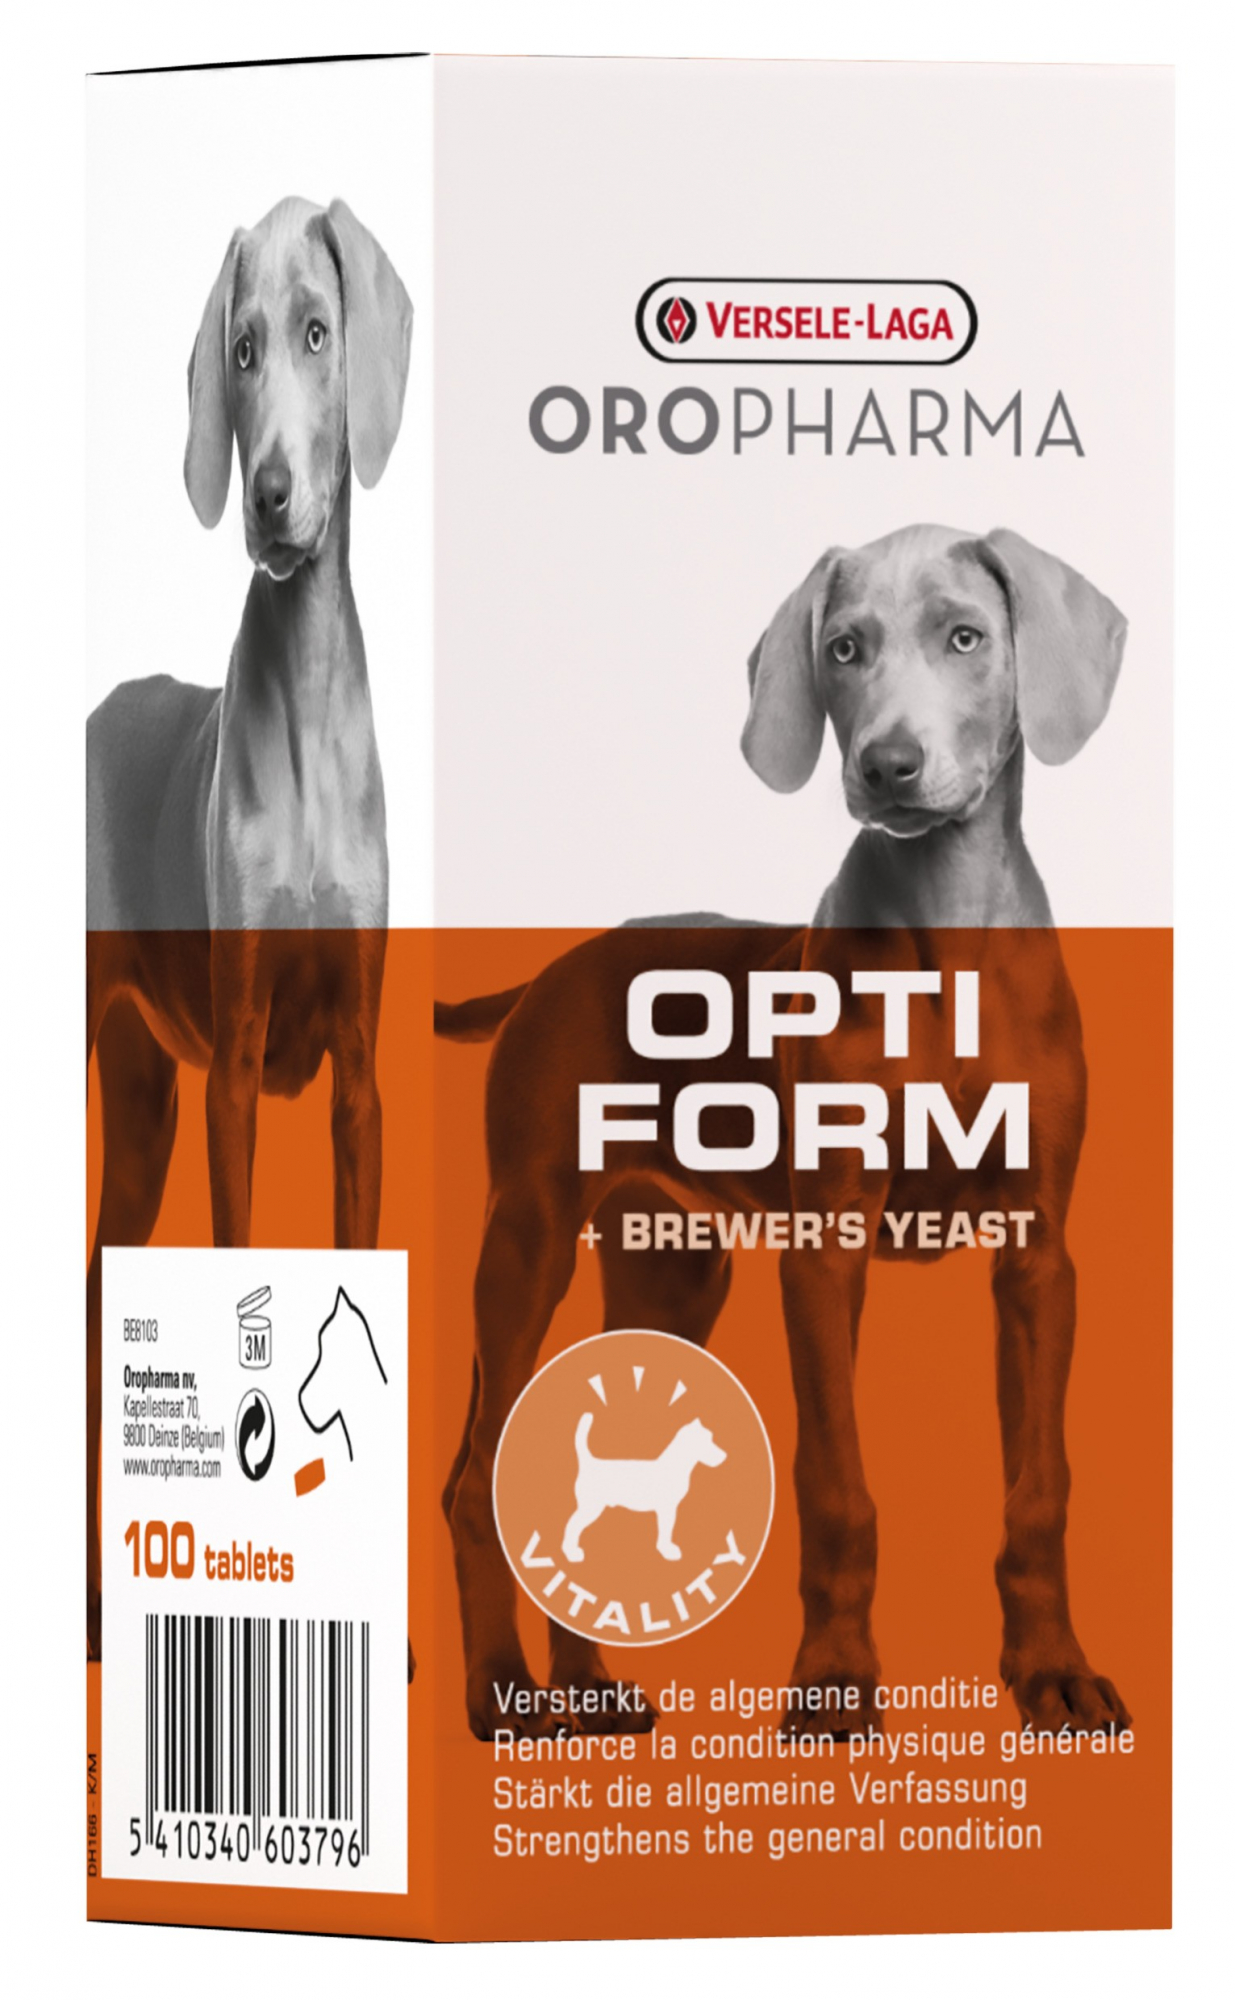 Oropharma Opti Form - levedura de cerveja para uma saude optimal